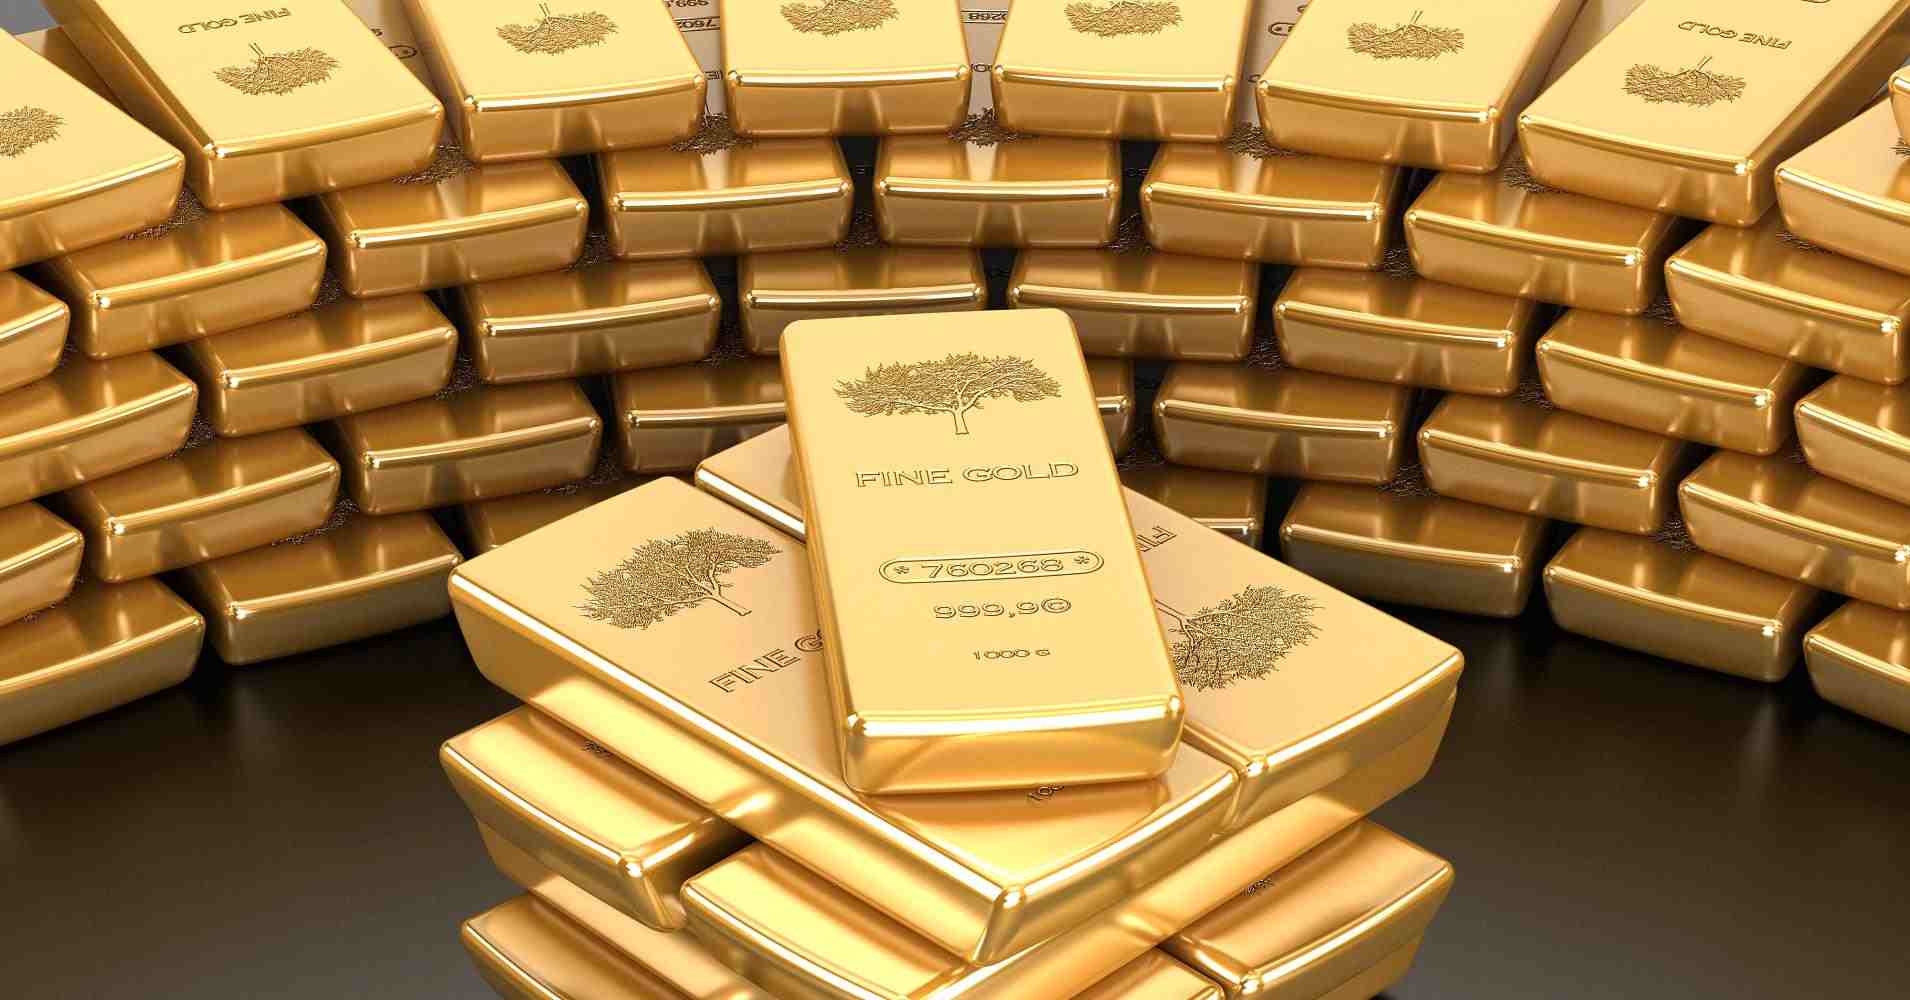 أسعار الذهب اليوم الثلاثاء 26 3 2019 وانخفاض جديد بالأسعار تريندات